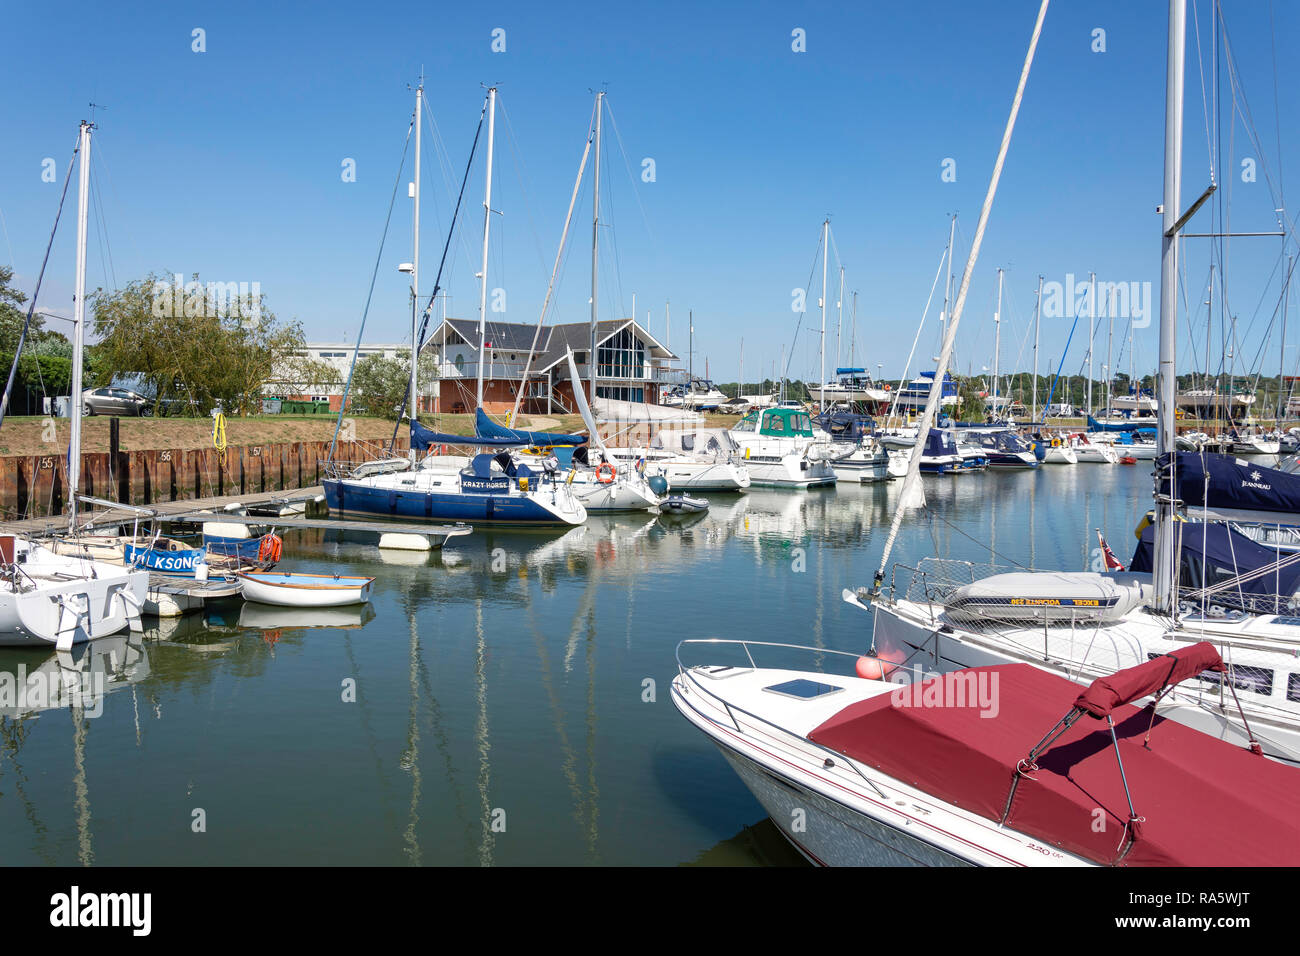 Tidemill Yacht Harbor, moulin à marée, Woodbridge, Suffolk, Angleterre, Royaume-Uni Banque D'Images